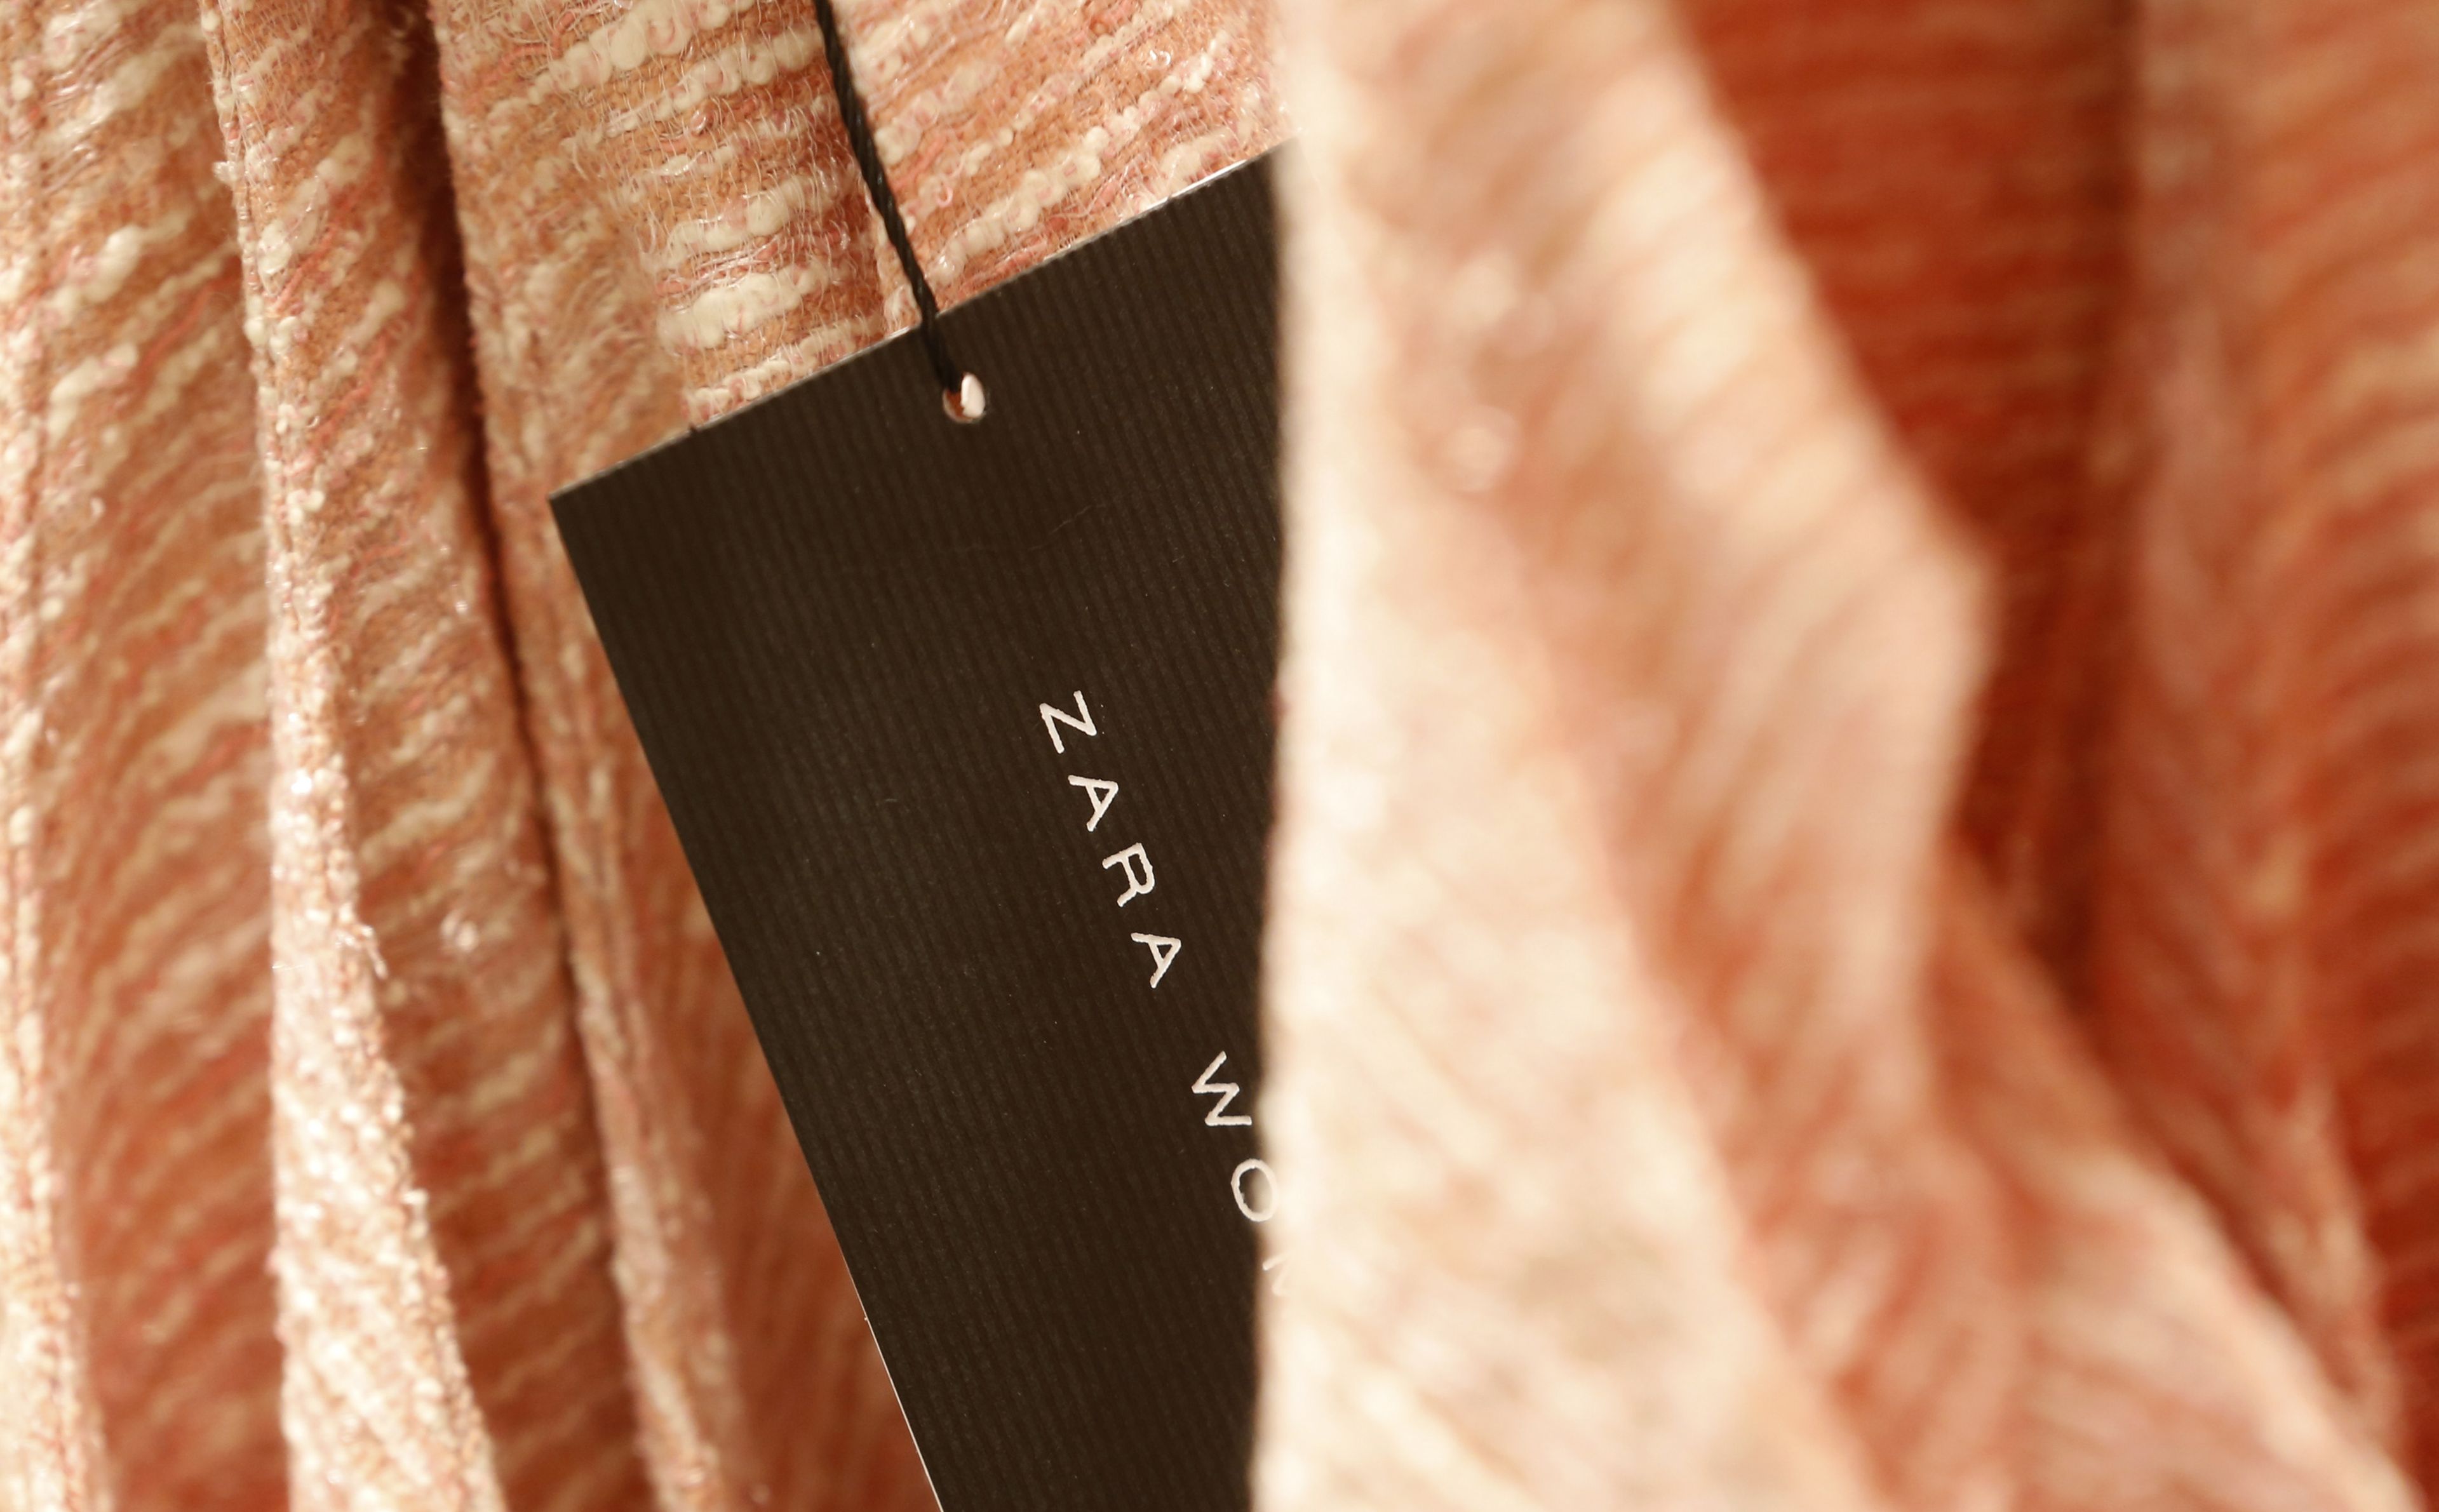 Significado del triángulo, cuadrado y círculo en las etiquetas de Zara